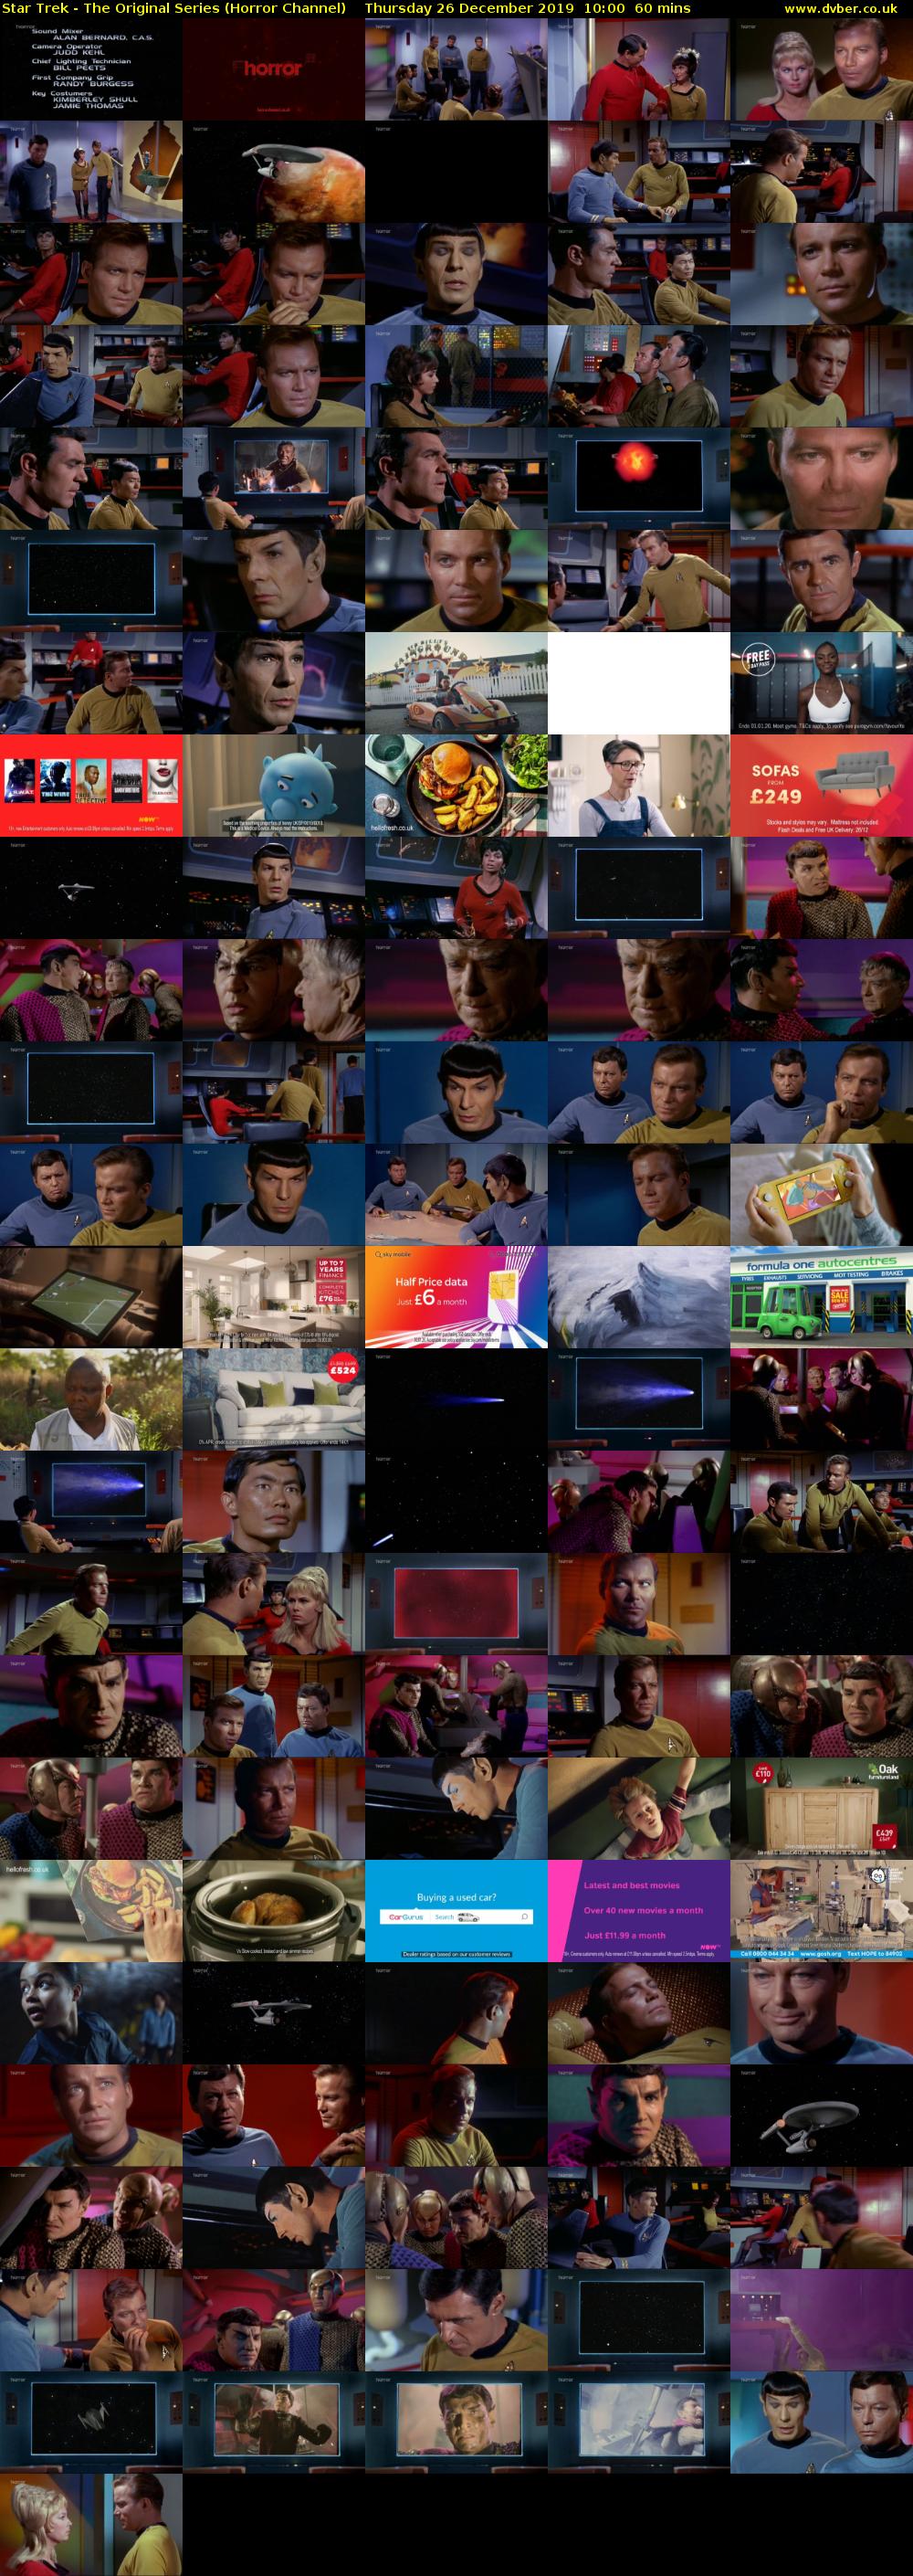 Star Trek - The Original Series (Horror Channel) Thursday 26 December 2019 10:00 - 11:00